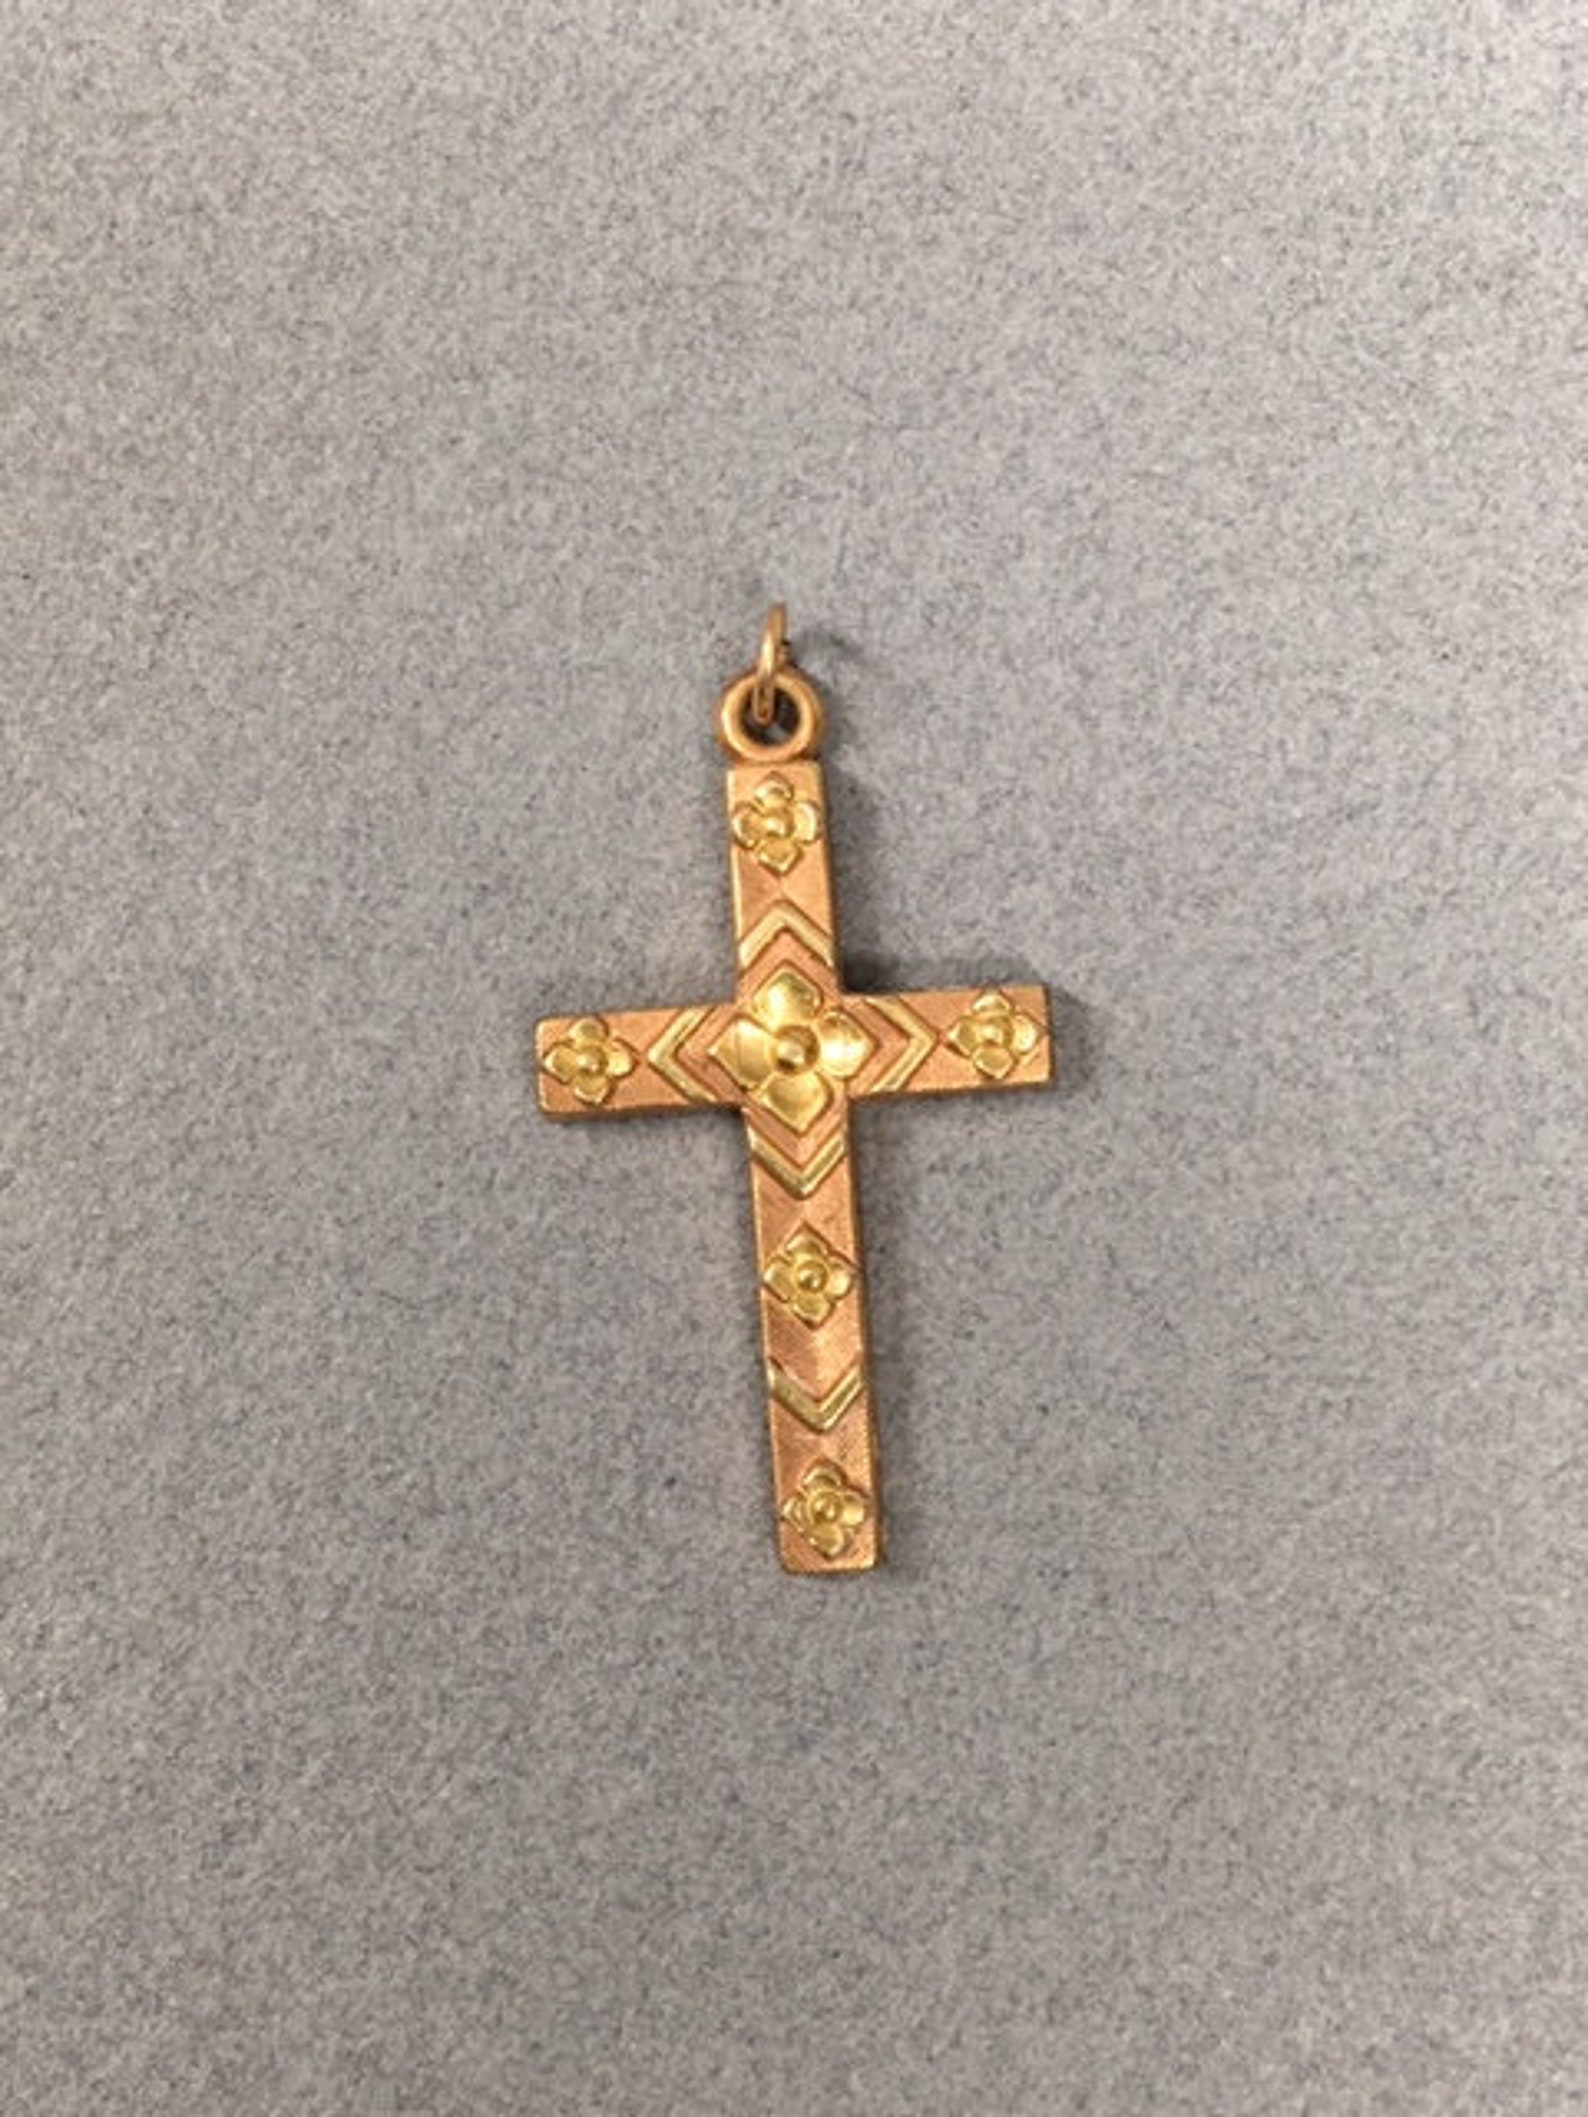 Gold Cross Pendant 1/20 12K Engraved Vintage Religious Gift - Etsy